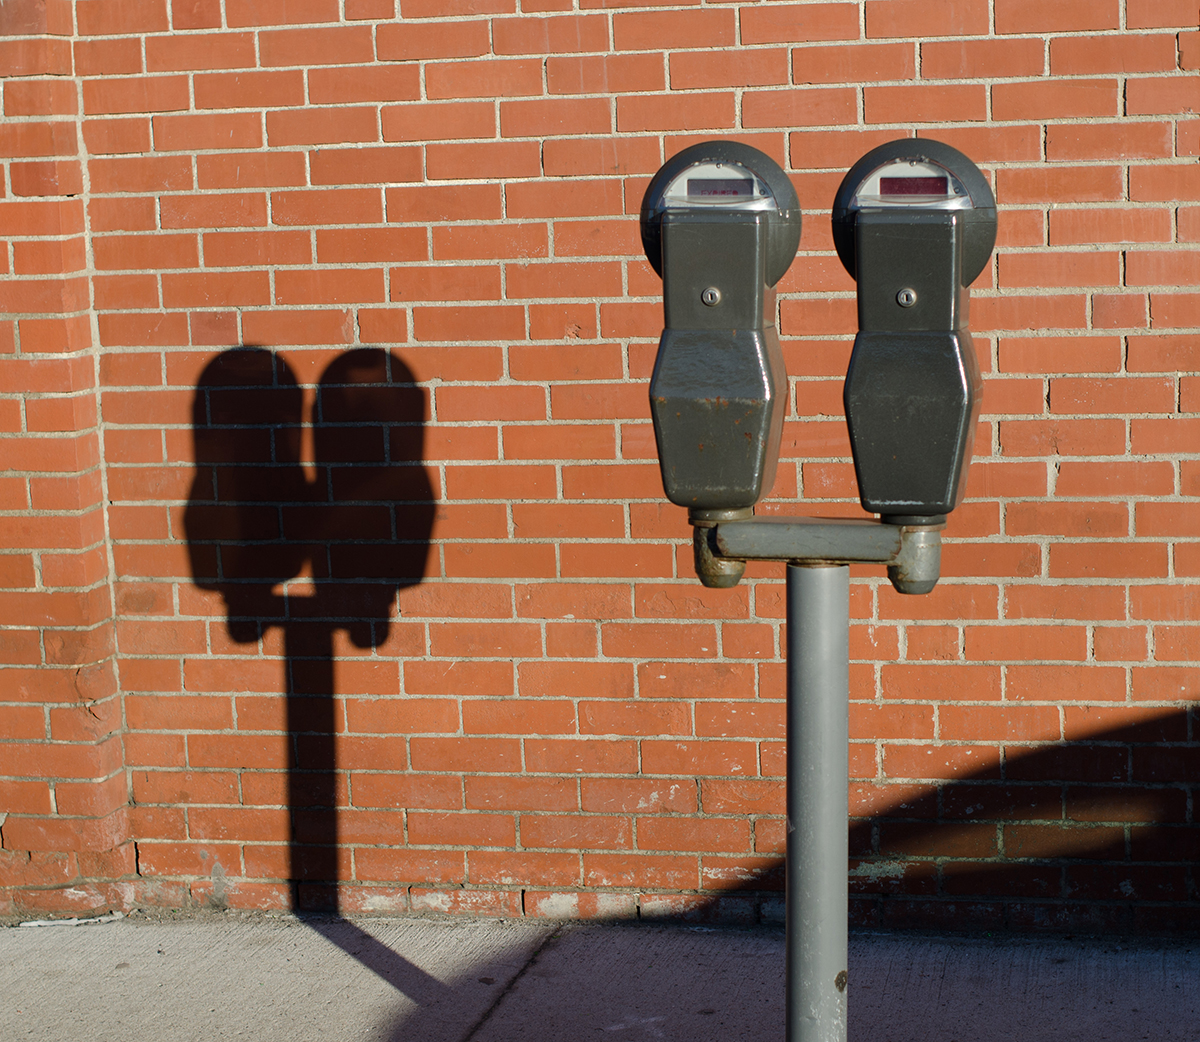 Parking Meters by Tim Pierce via Flickr/Creative Commons